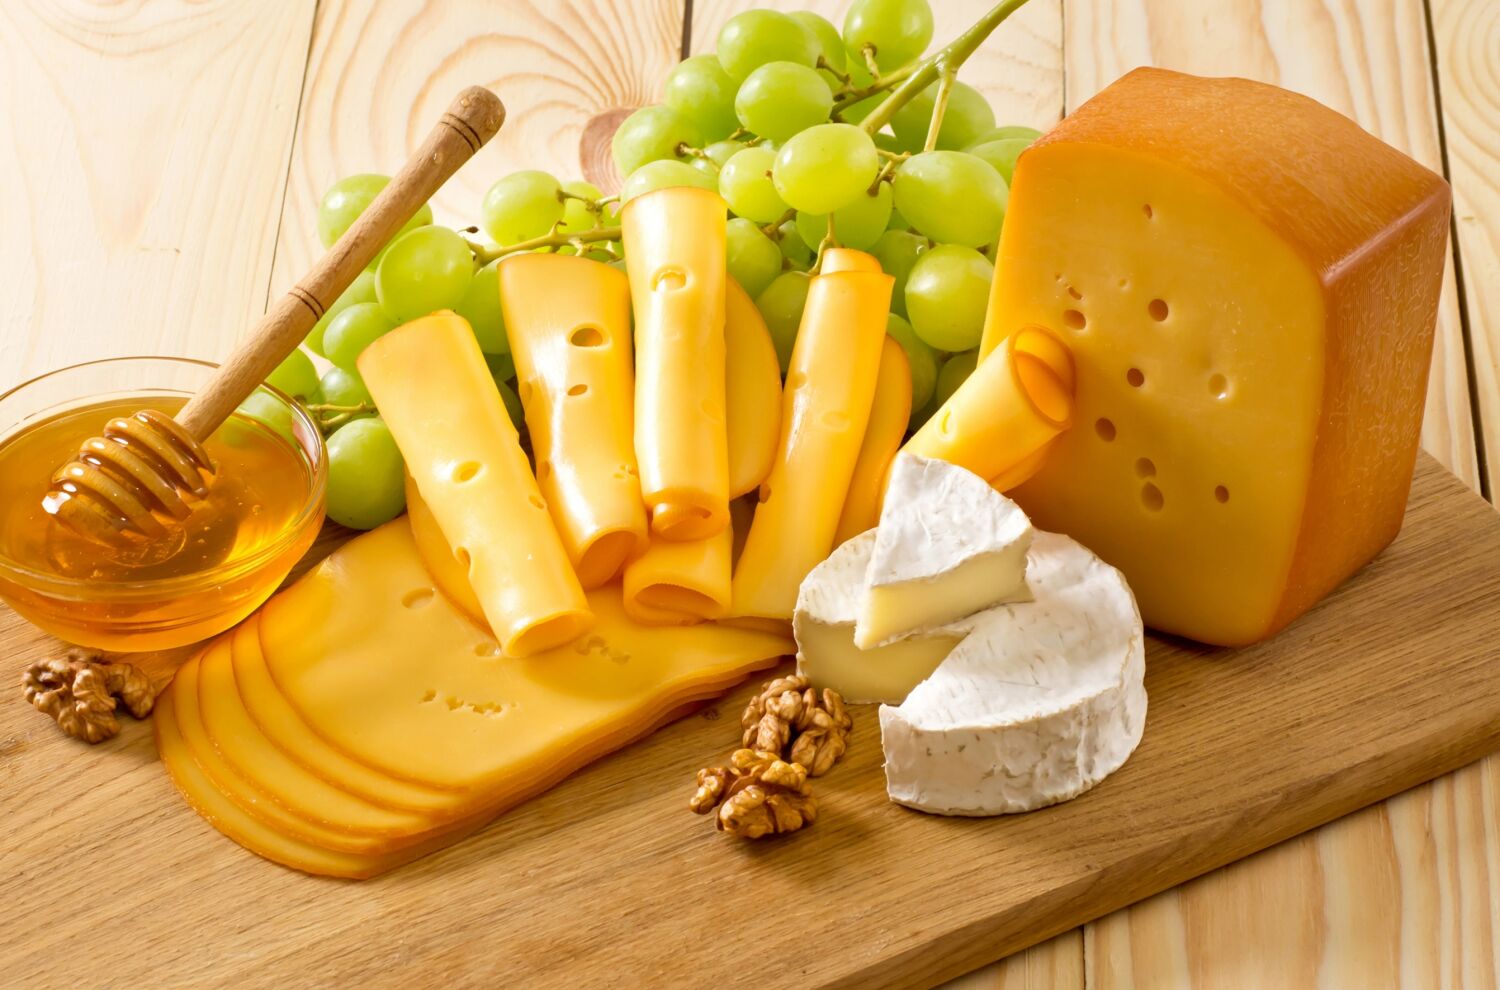 Сыр с плесенью и виноград на доске